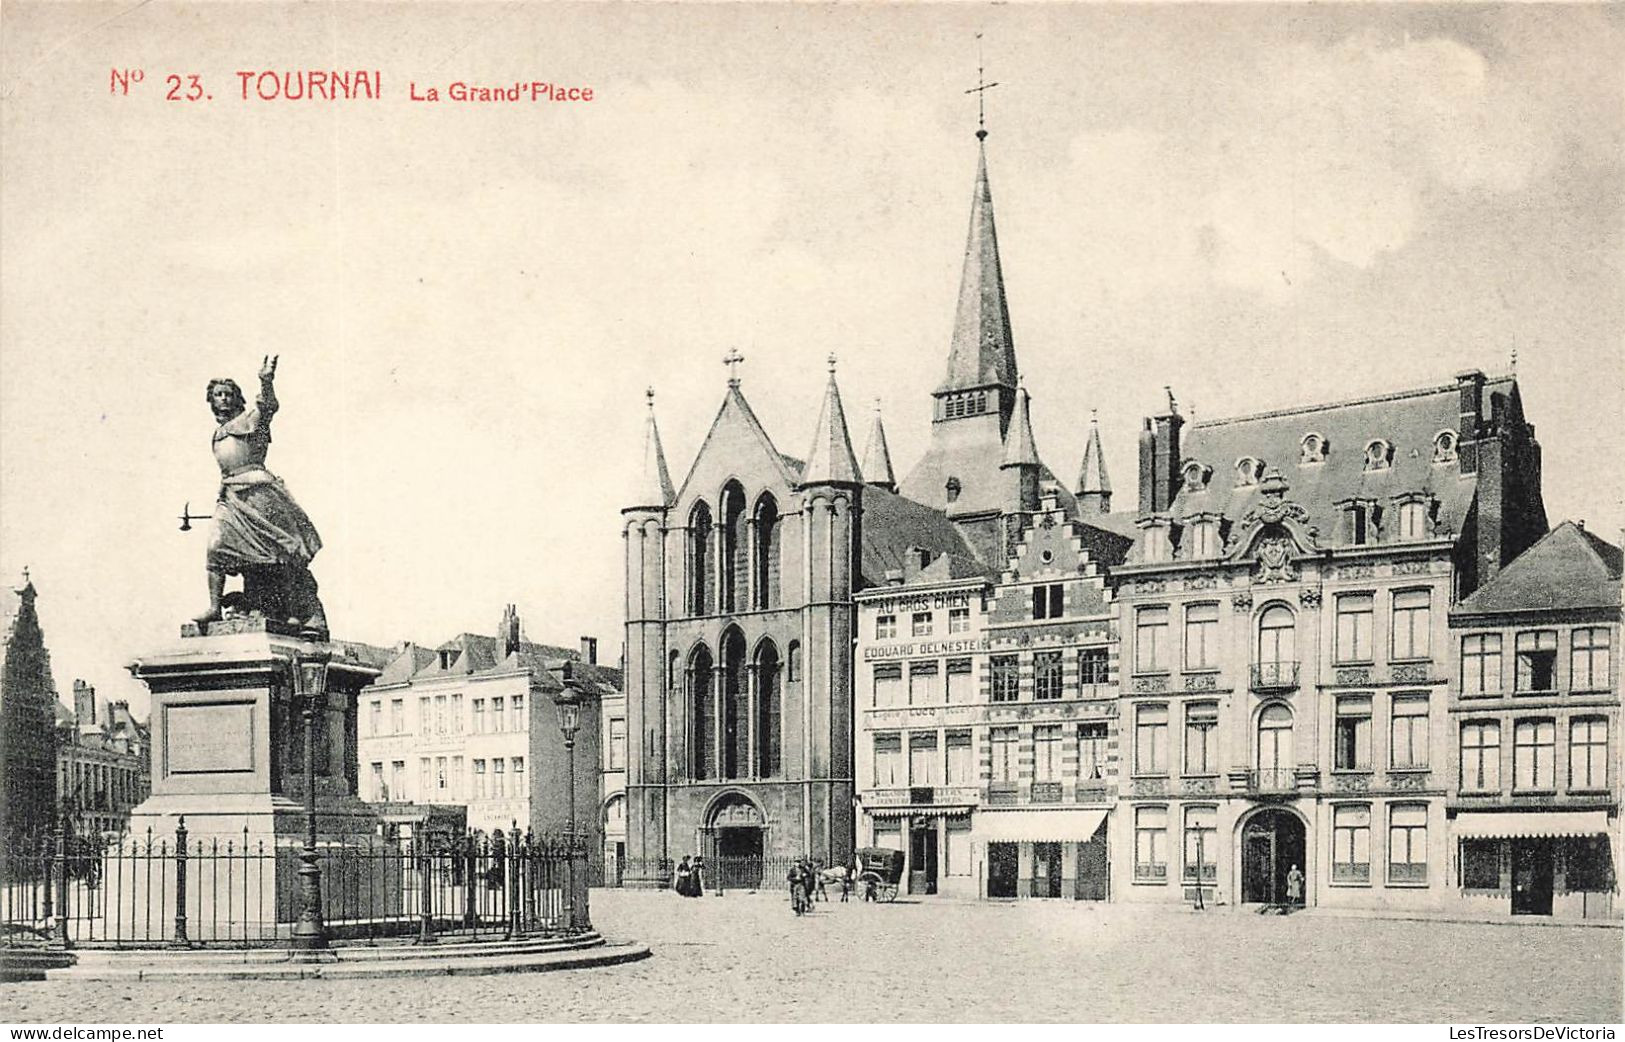 BELGIQUE - Tournai - Vue Sur La Grande Place - Carte Postale Ancienne - Tournai